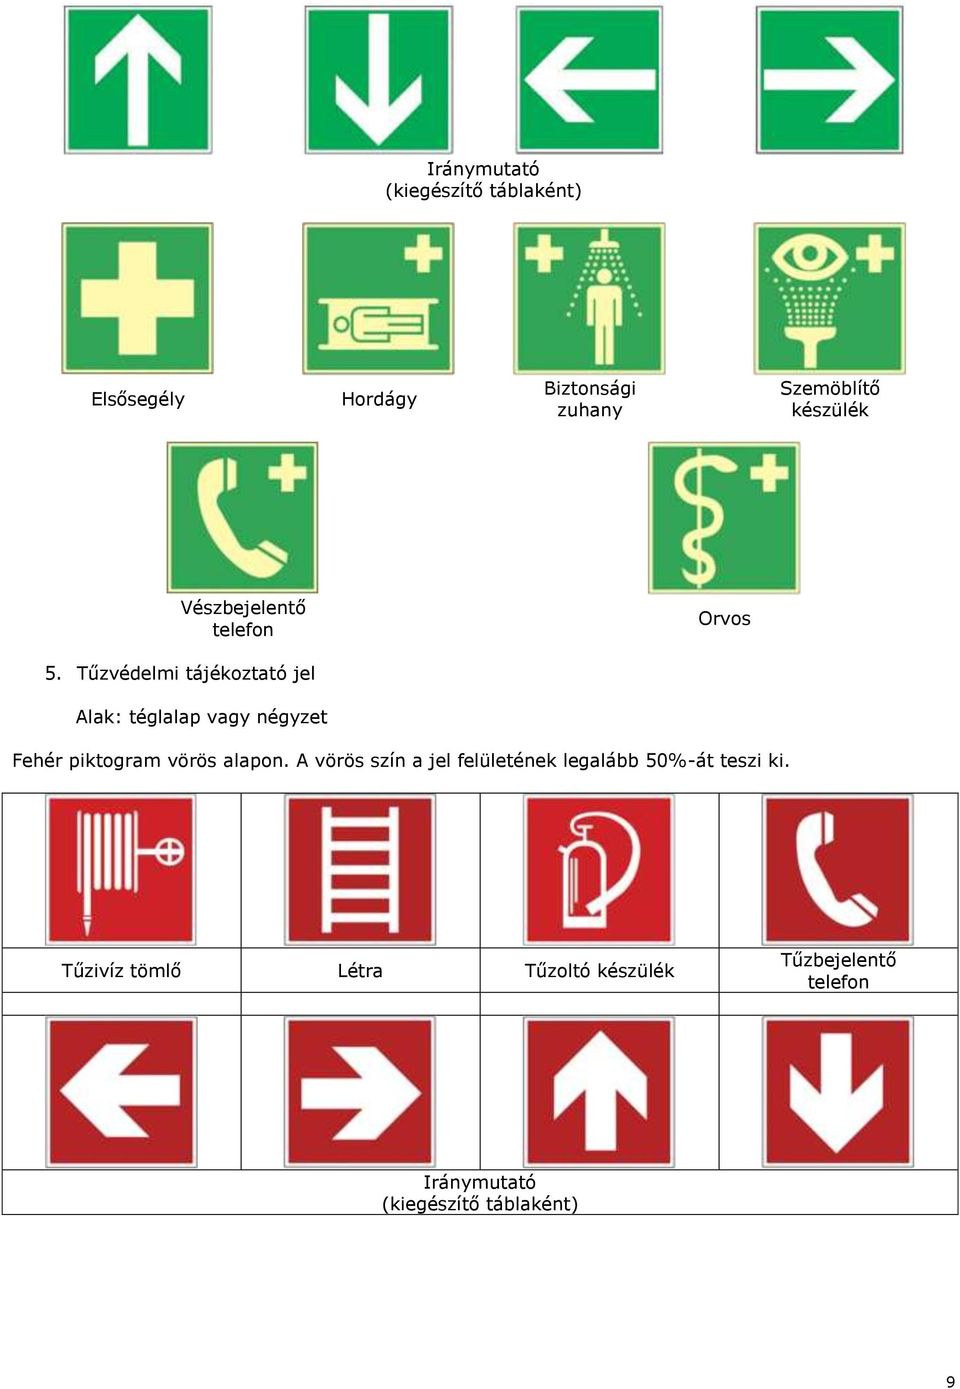 Tűzvédelmi tájékoztató jel Alak: téglalap vagy négyzet Fehér piktogram vörös alapon.